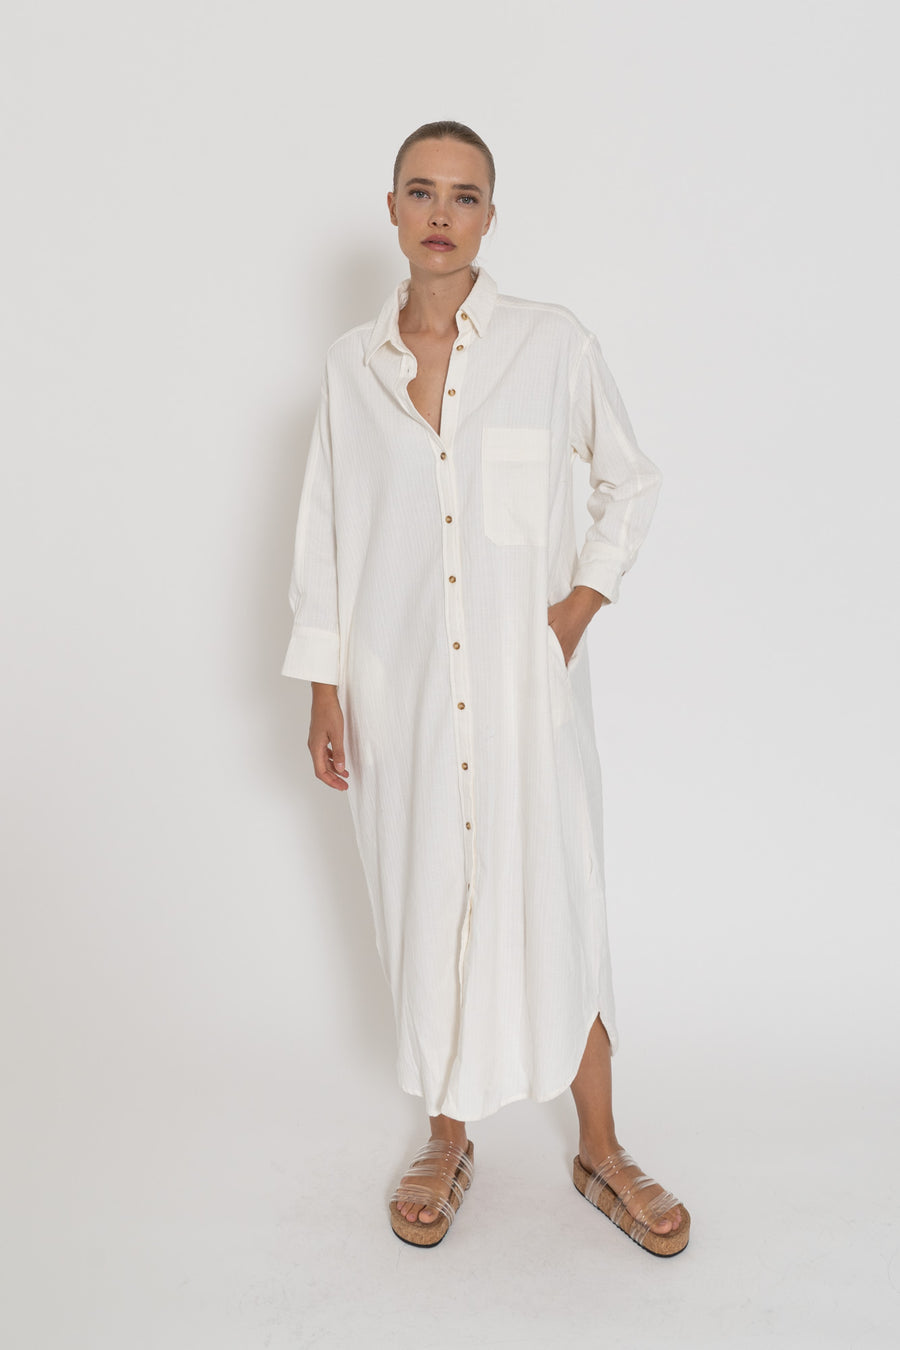 'Vacanza Shirt Dress'- White Cotton Slub